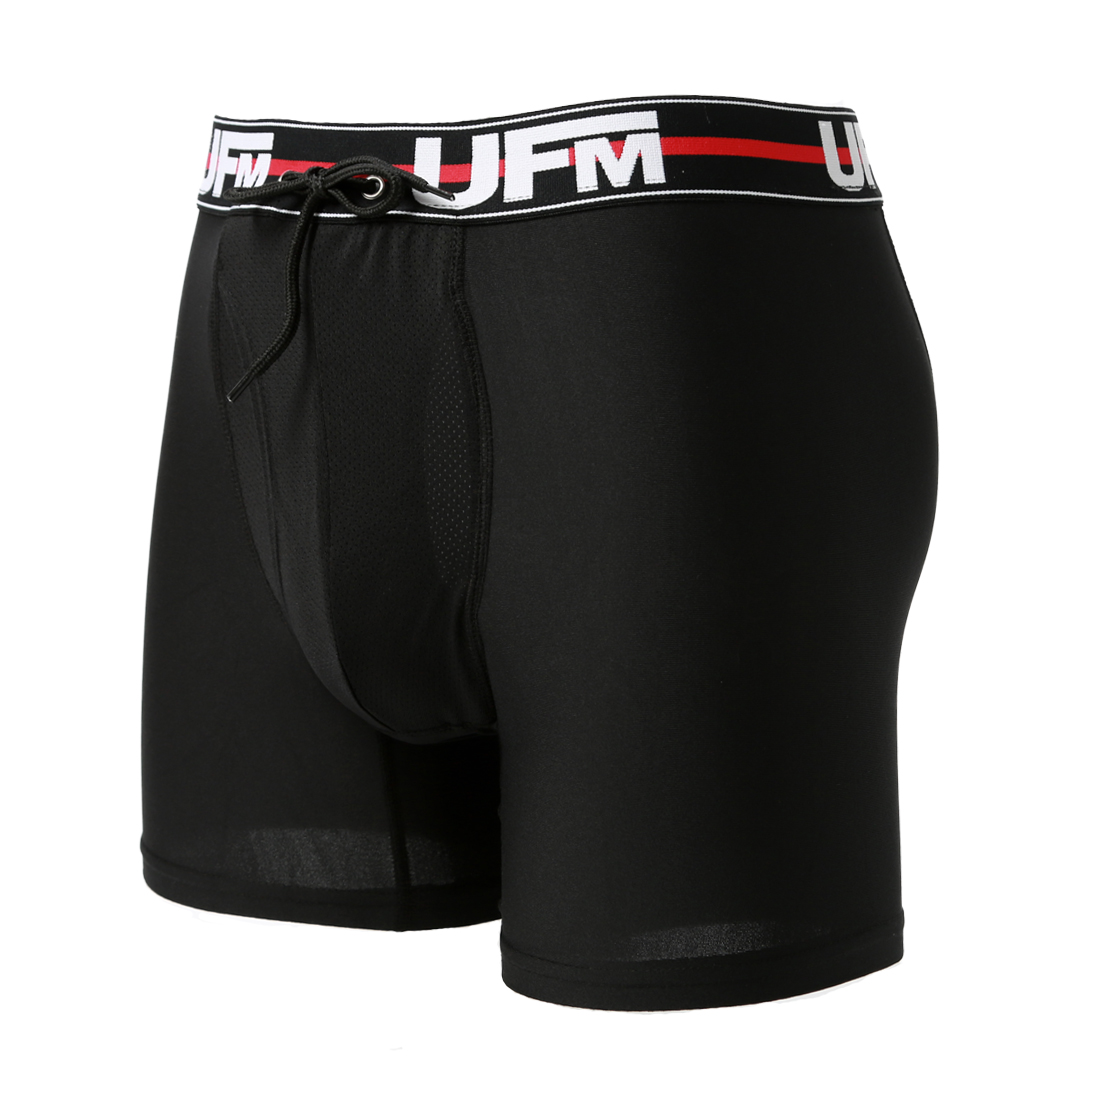 6 inch Polyester-Spandex Medical Boxer Briefs MAX Support (Gen 3) Underwear  for Men